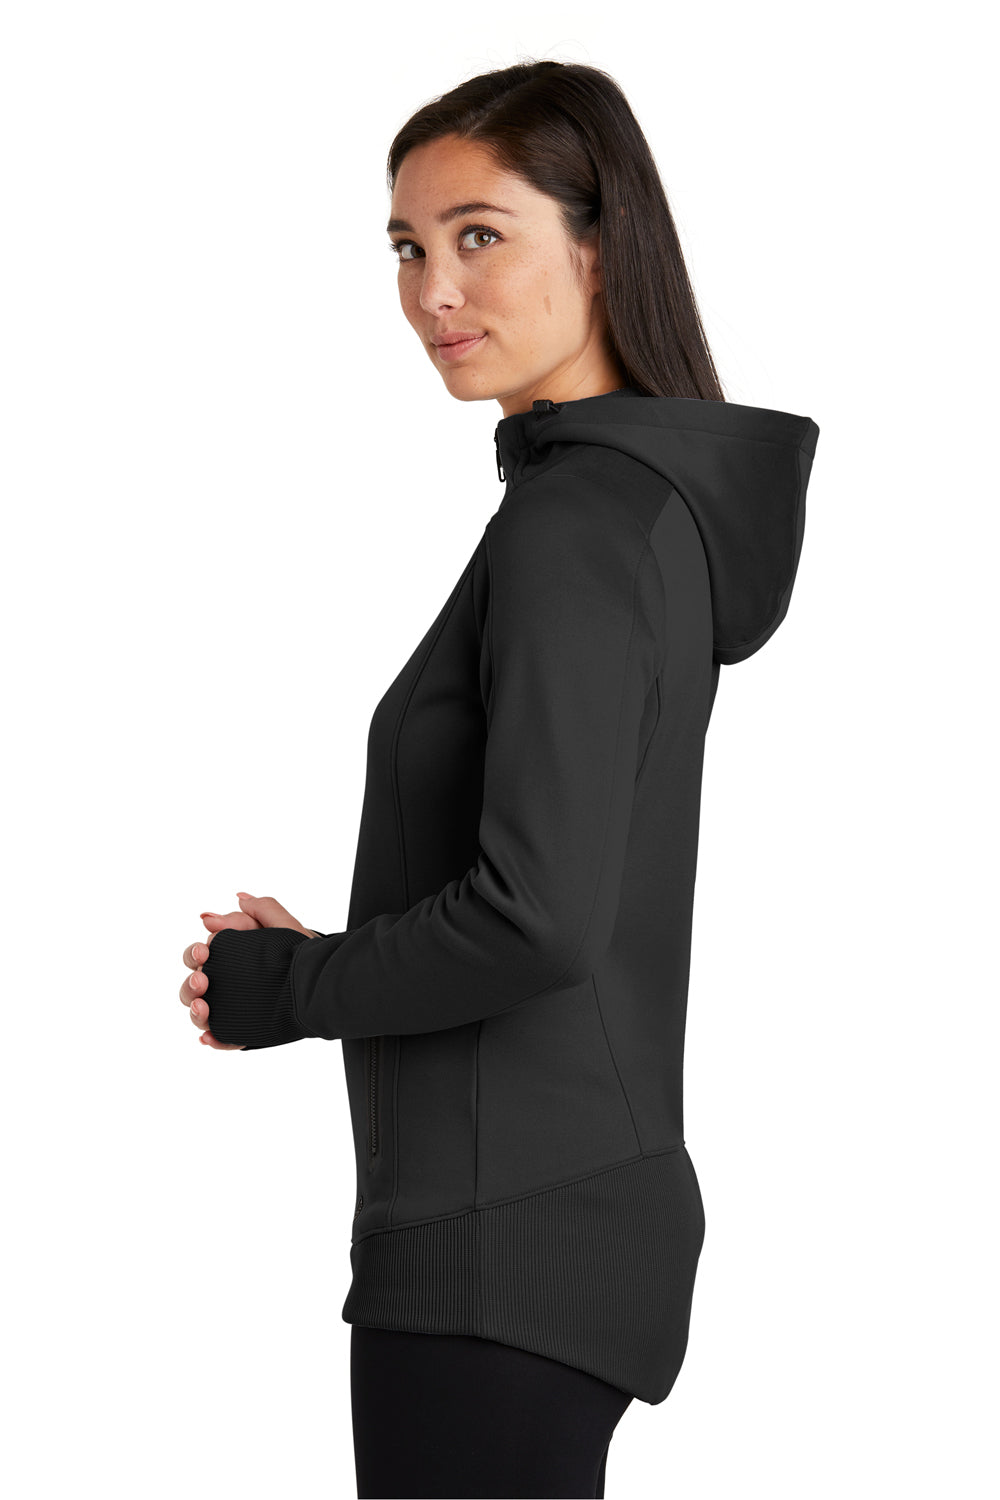 New Era LNEA522 Womens Venue Moisture Wicking Fleece Full Zip Hooded Sweatshirt Hoodie Black Side